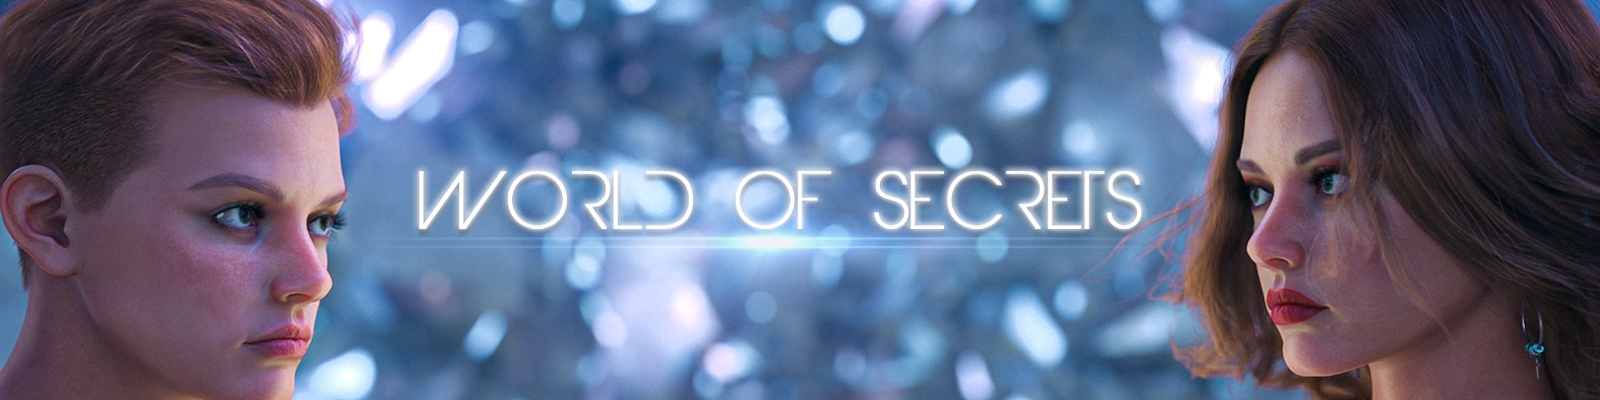 World of Secrets1.jpg